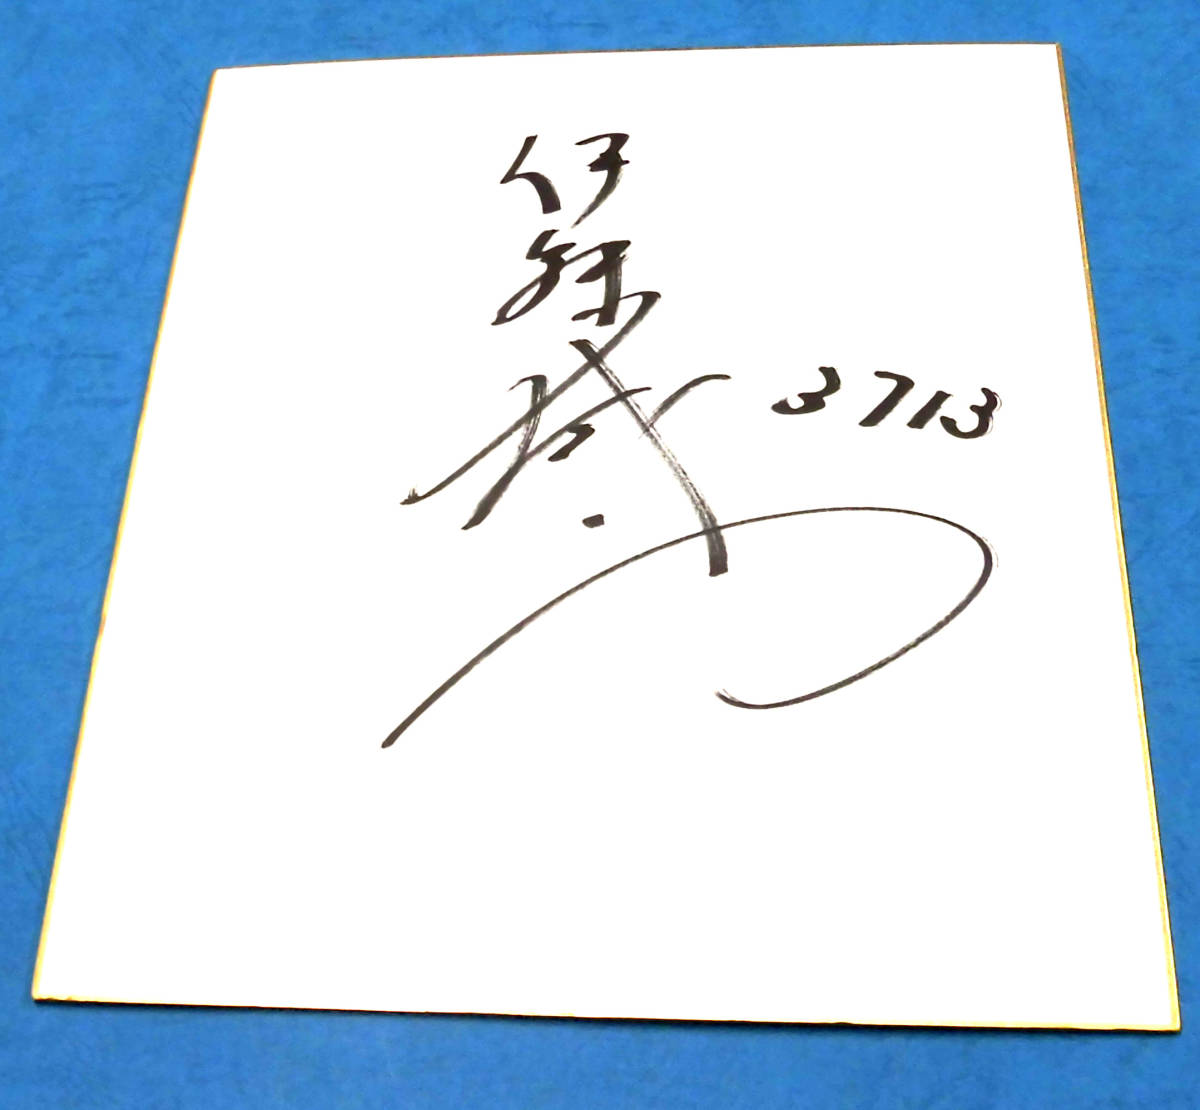 سباق القوارب Seiji Ito (Aichi) ورق ملون موقع وقميص توقيع بطل G1 لسباق القوارب + مكافأة, رياضات, فراغ, سباق القوارب, آحرون